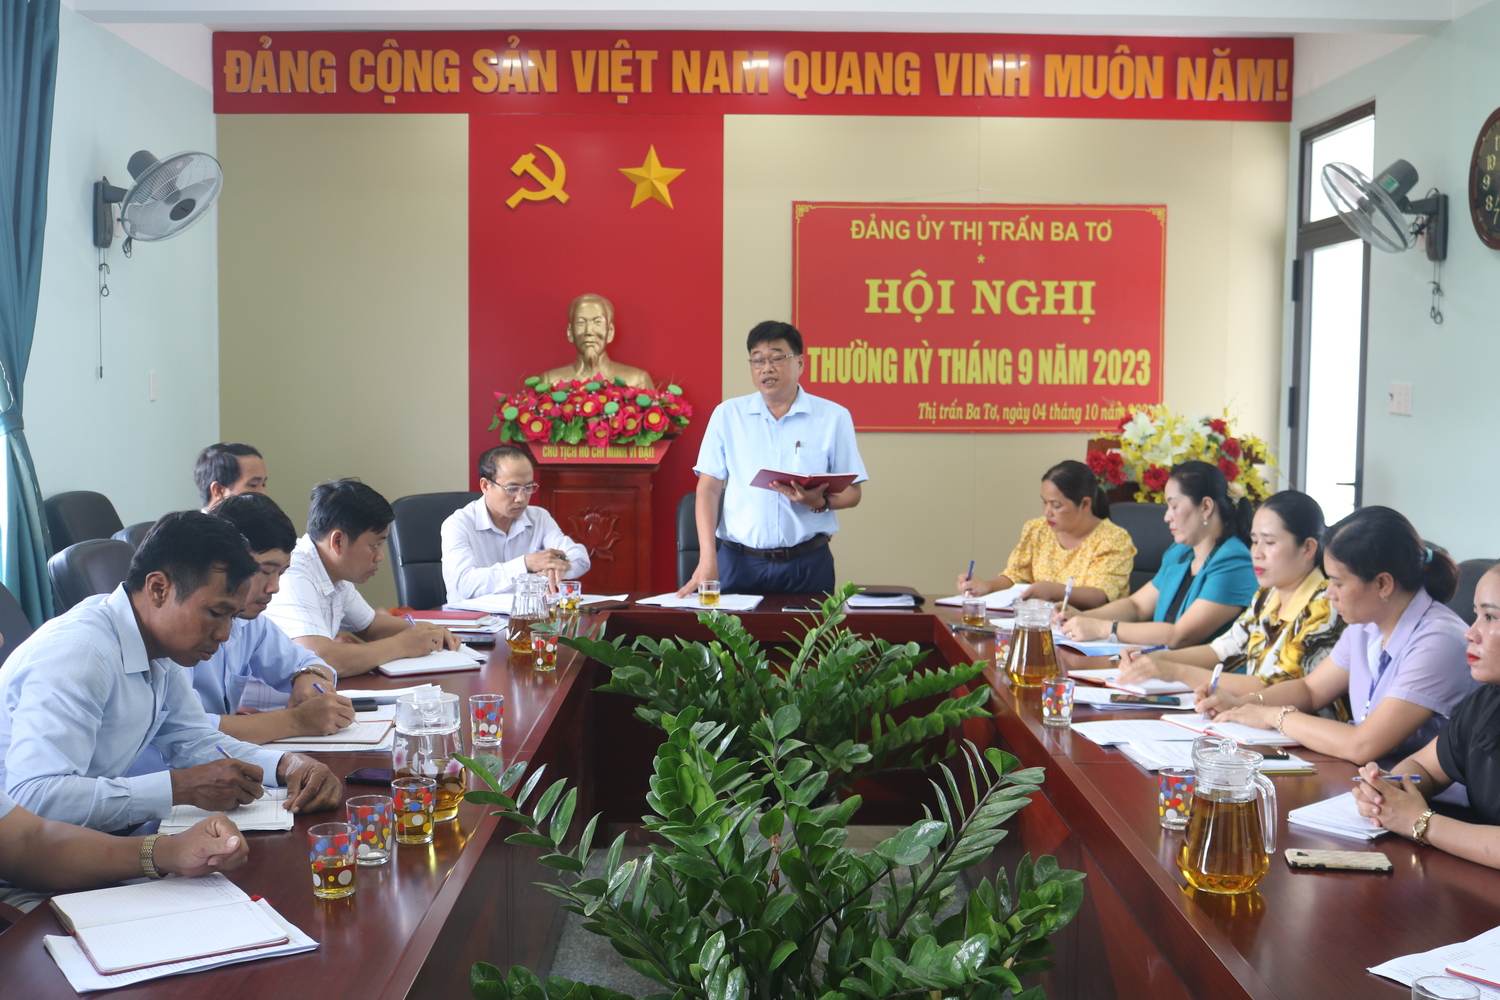 Phó Bí thư Tỉnh ủy Đinh Thị Hồng Minh dự sinh hoạt tại Đảng bộ thị trấn Ba Tơ